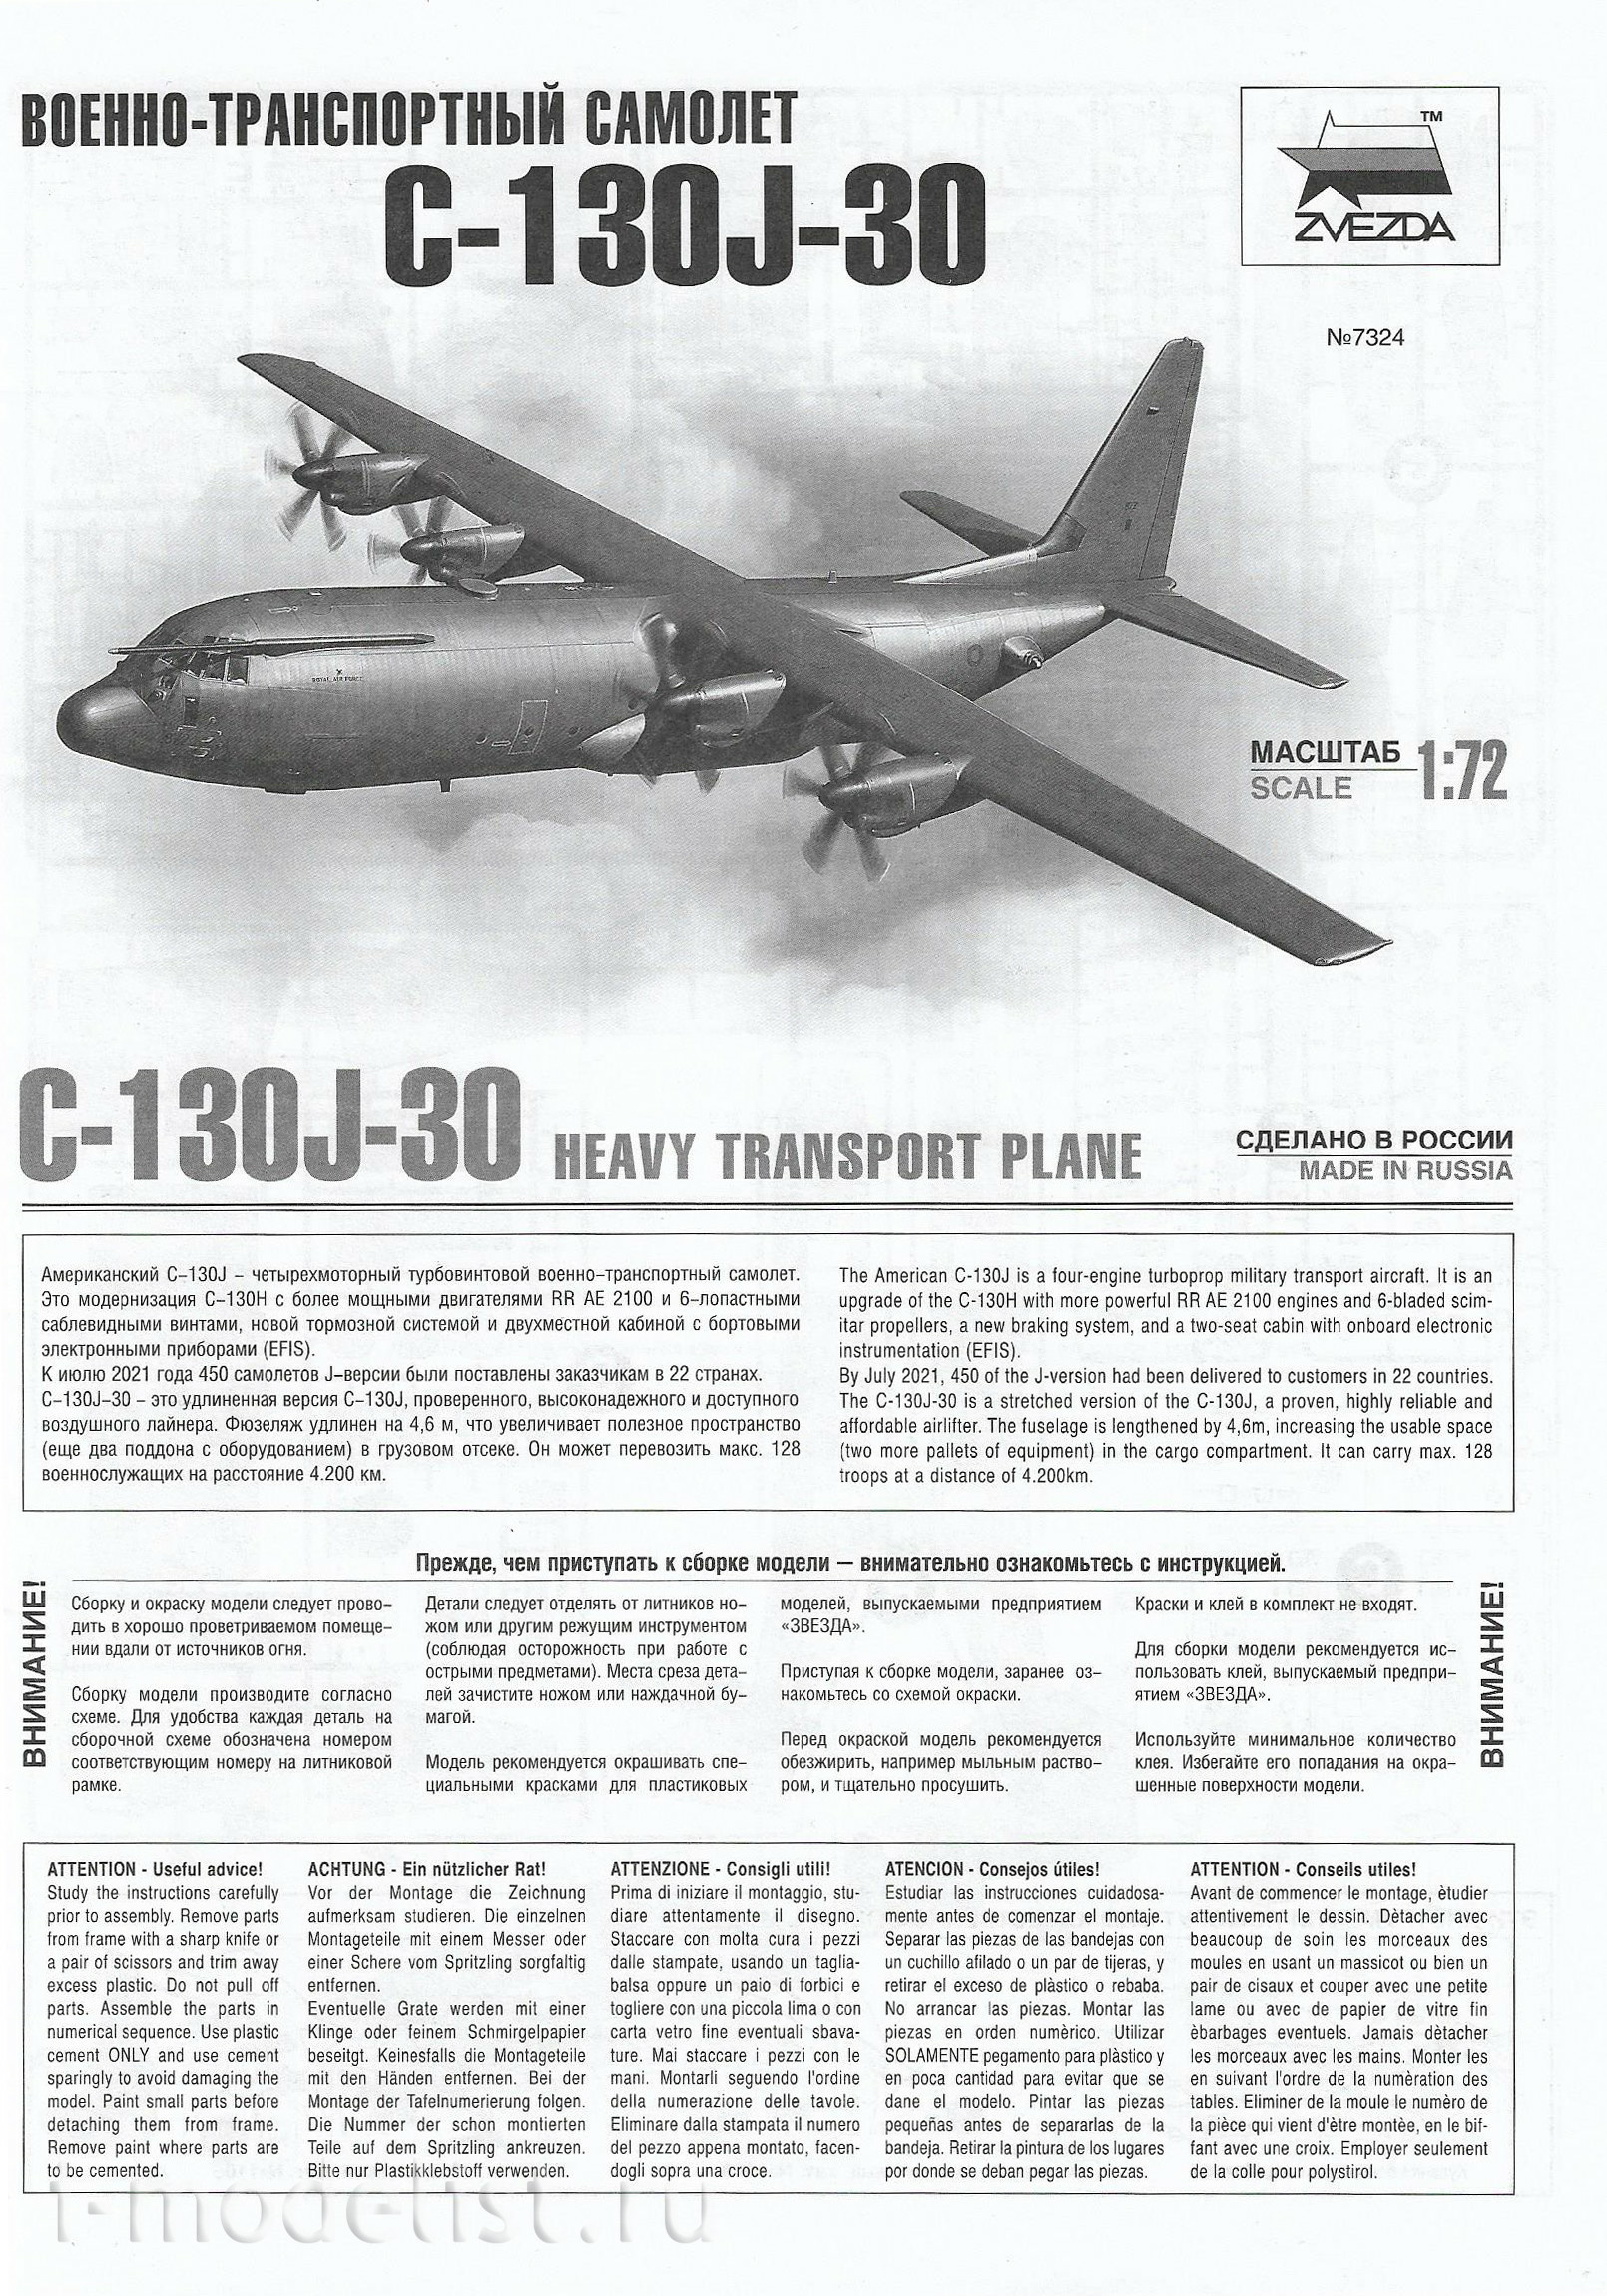 7324 Звезда 1/72 Американский военно-транспортный самолет С-130J-30 + купон на скидку 15%